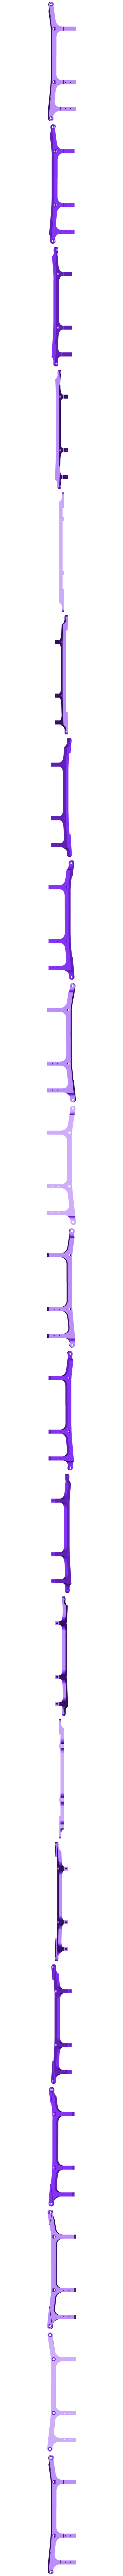 Chassis04-belt-34mm.STL Download free STL file Lynx - Fully 3D-printable 1/10 4wd buggy • 3D printable design, tahustvedt